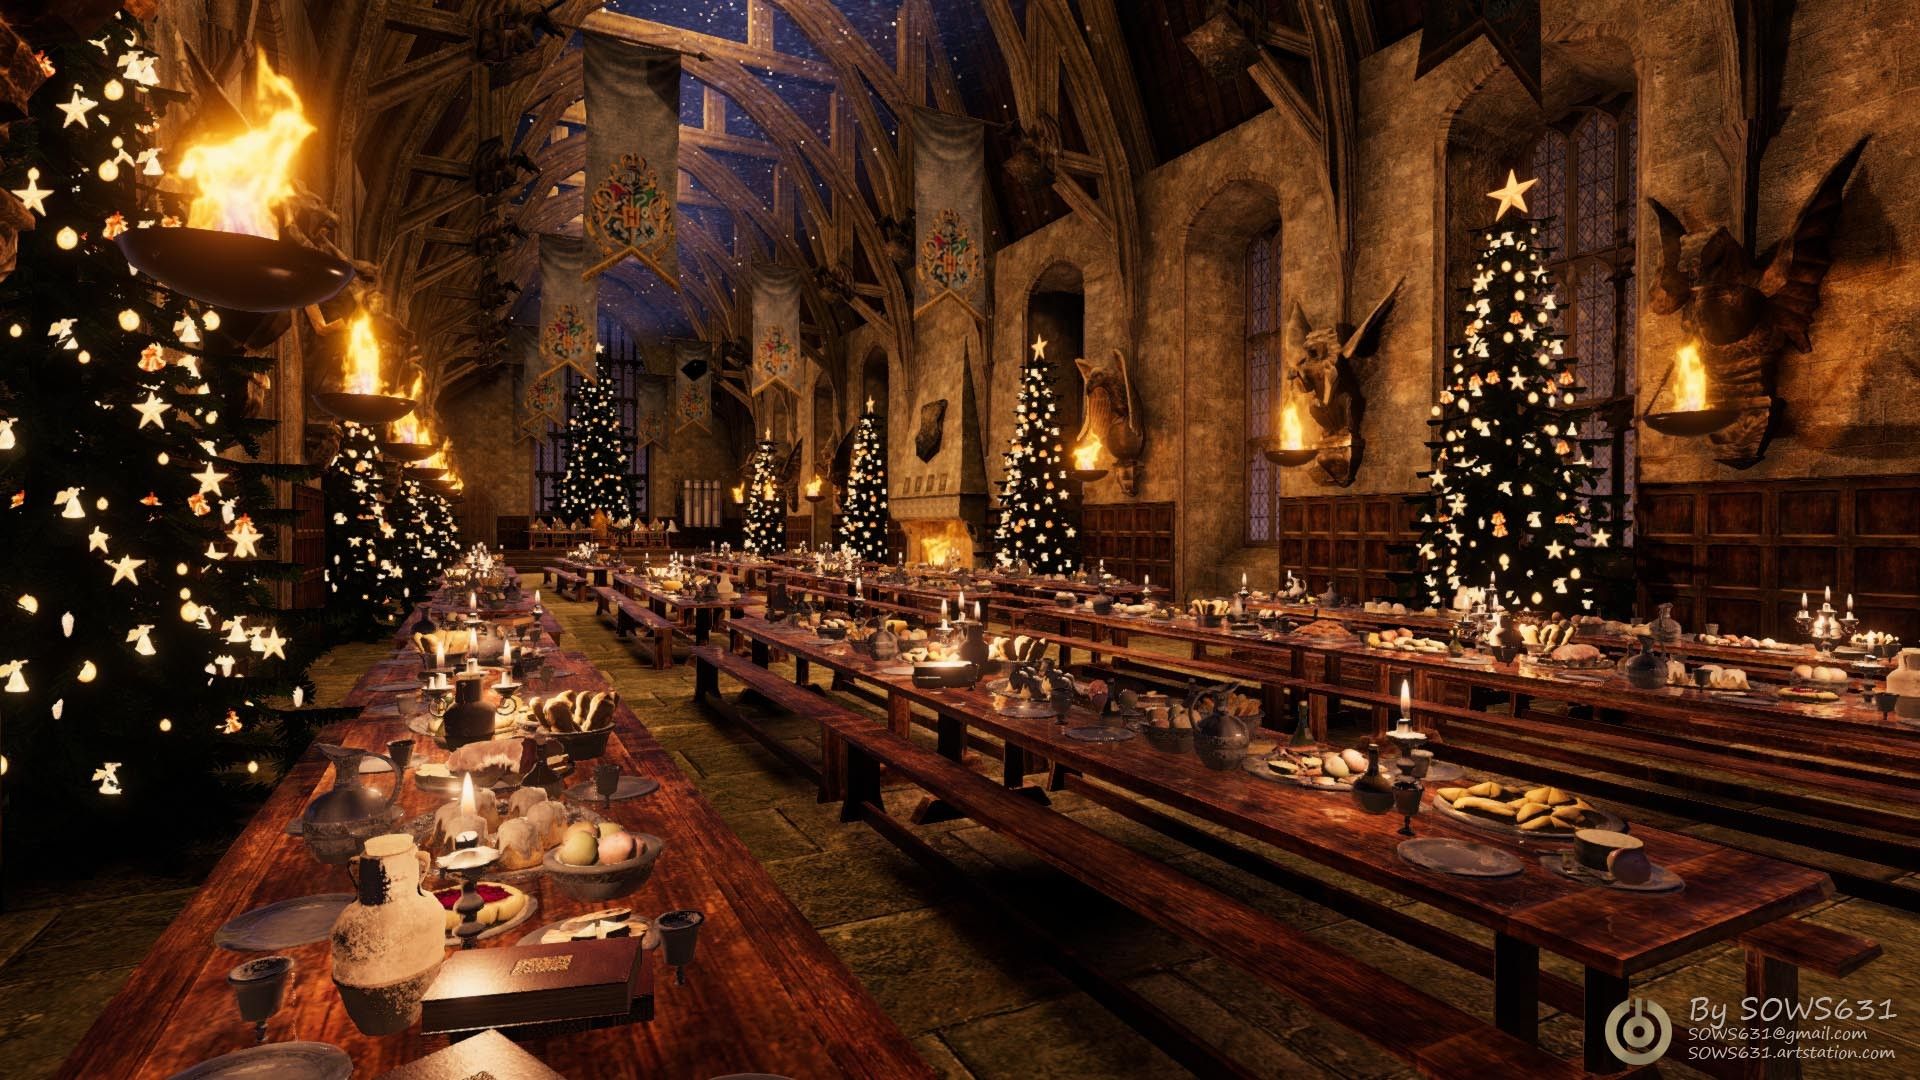 Hãy chiêm ngưỡng bộ sưu tập Hình nền Harry Potter Giáng sinh với những hình ảnh lấy cảm hứng từ thế giới ma thuật! Một mùa Giáng sinh thật phép thuật cho bạn và gia đình!